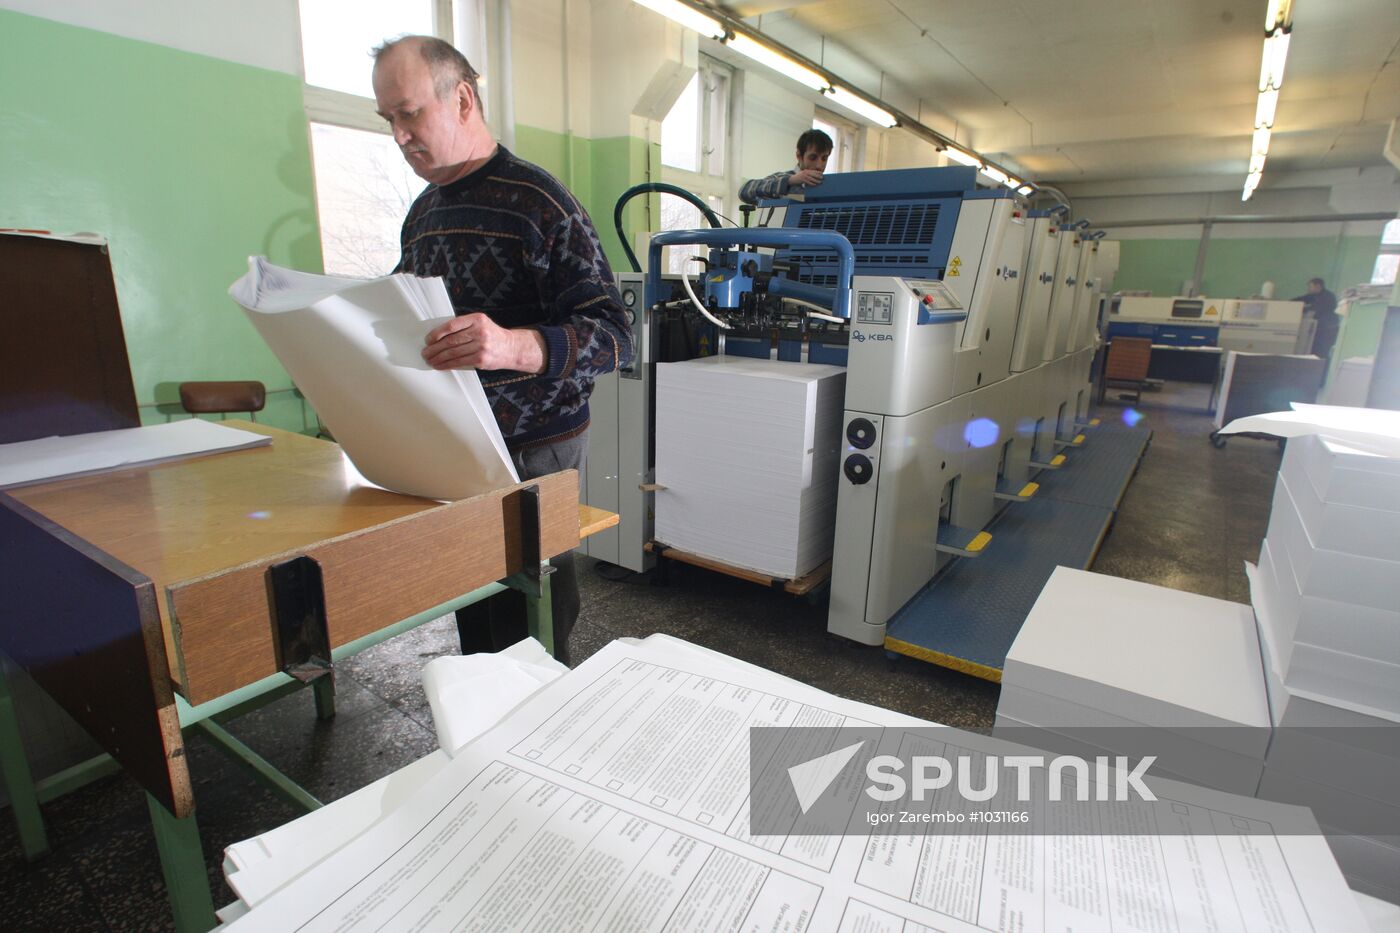 Election ballots printed in Kaliningrad